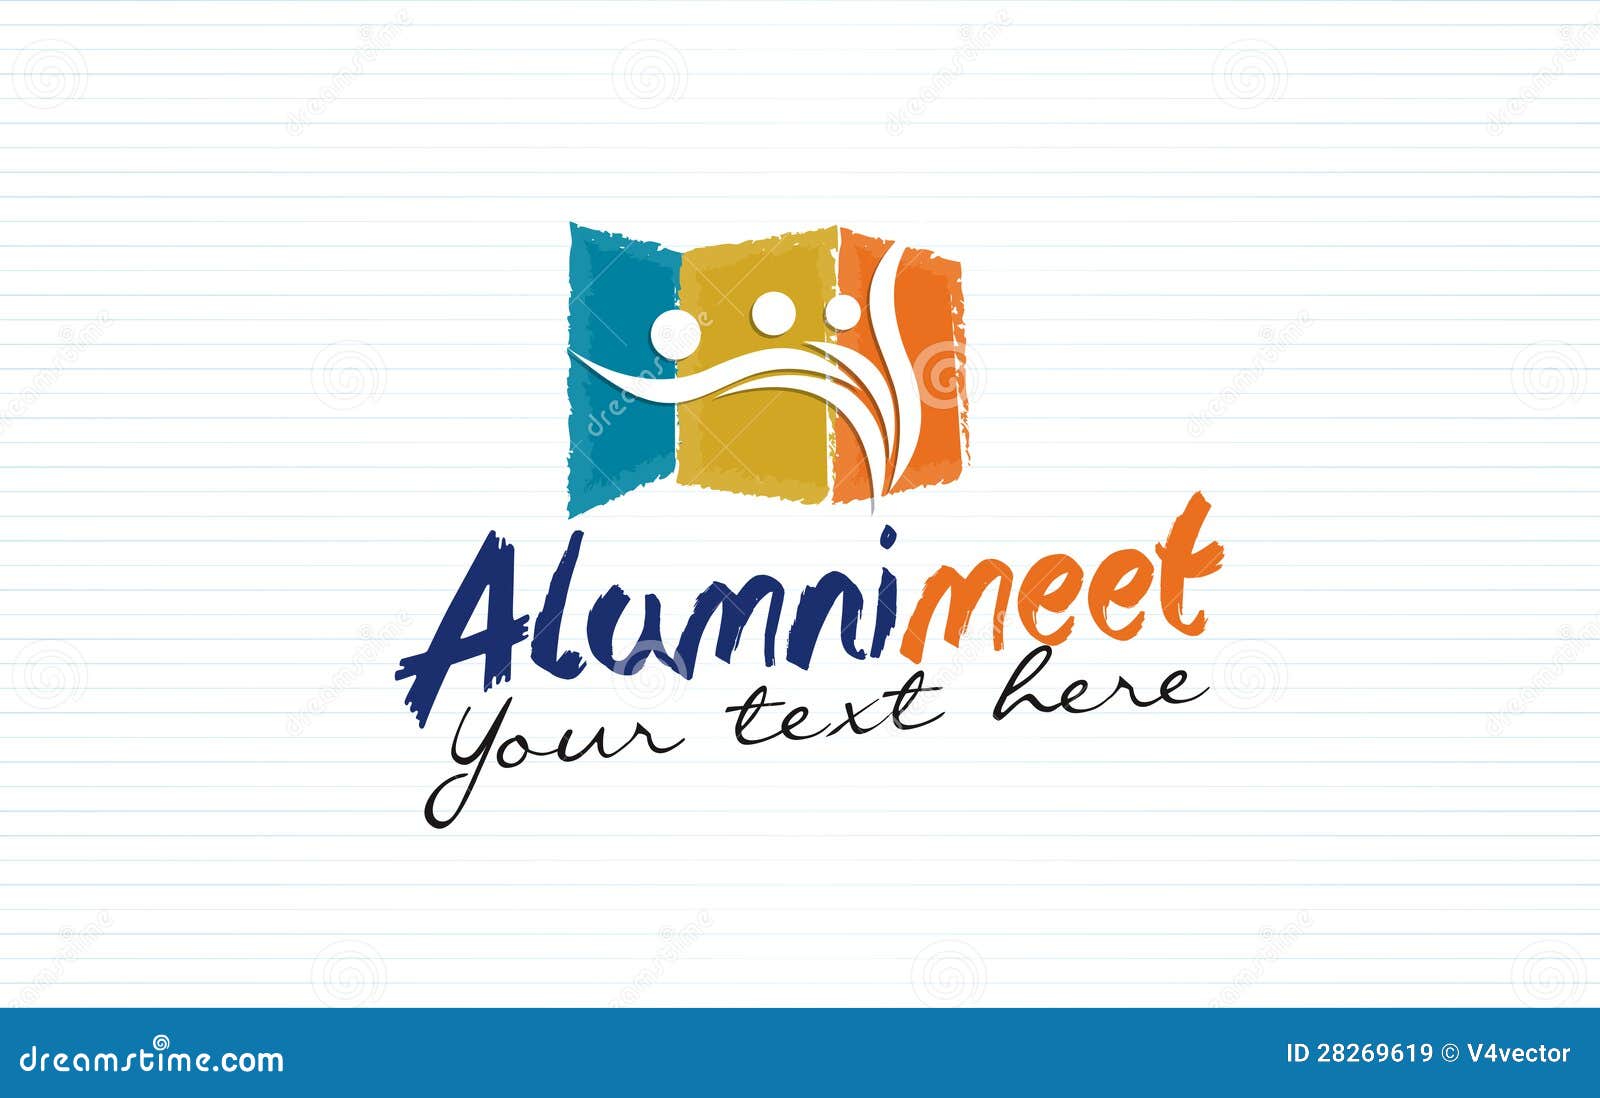 Alumni Meet Logo Design Royalty Free Stock Images - Image 